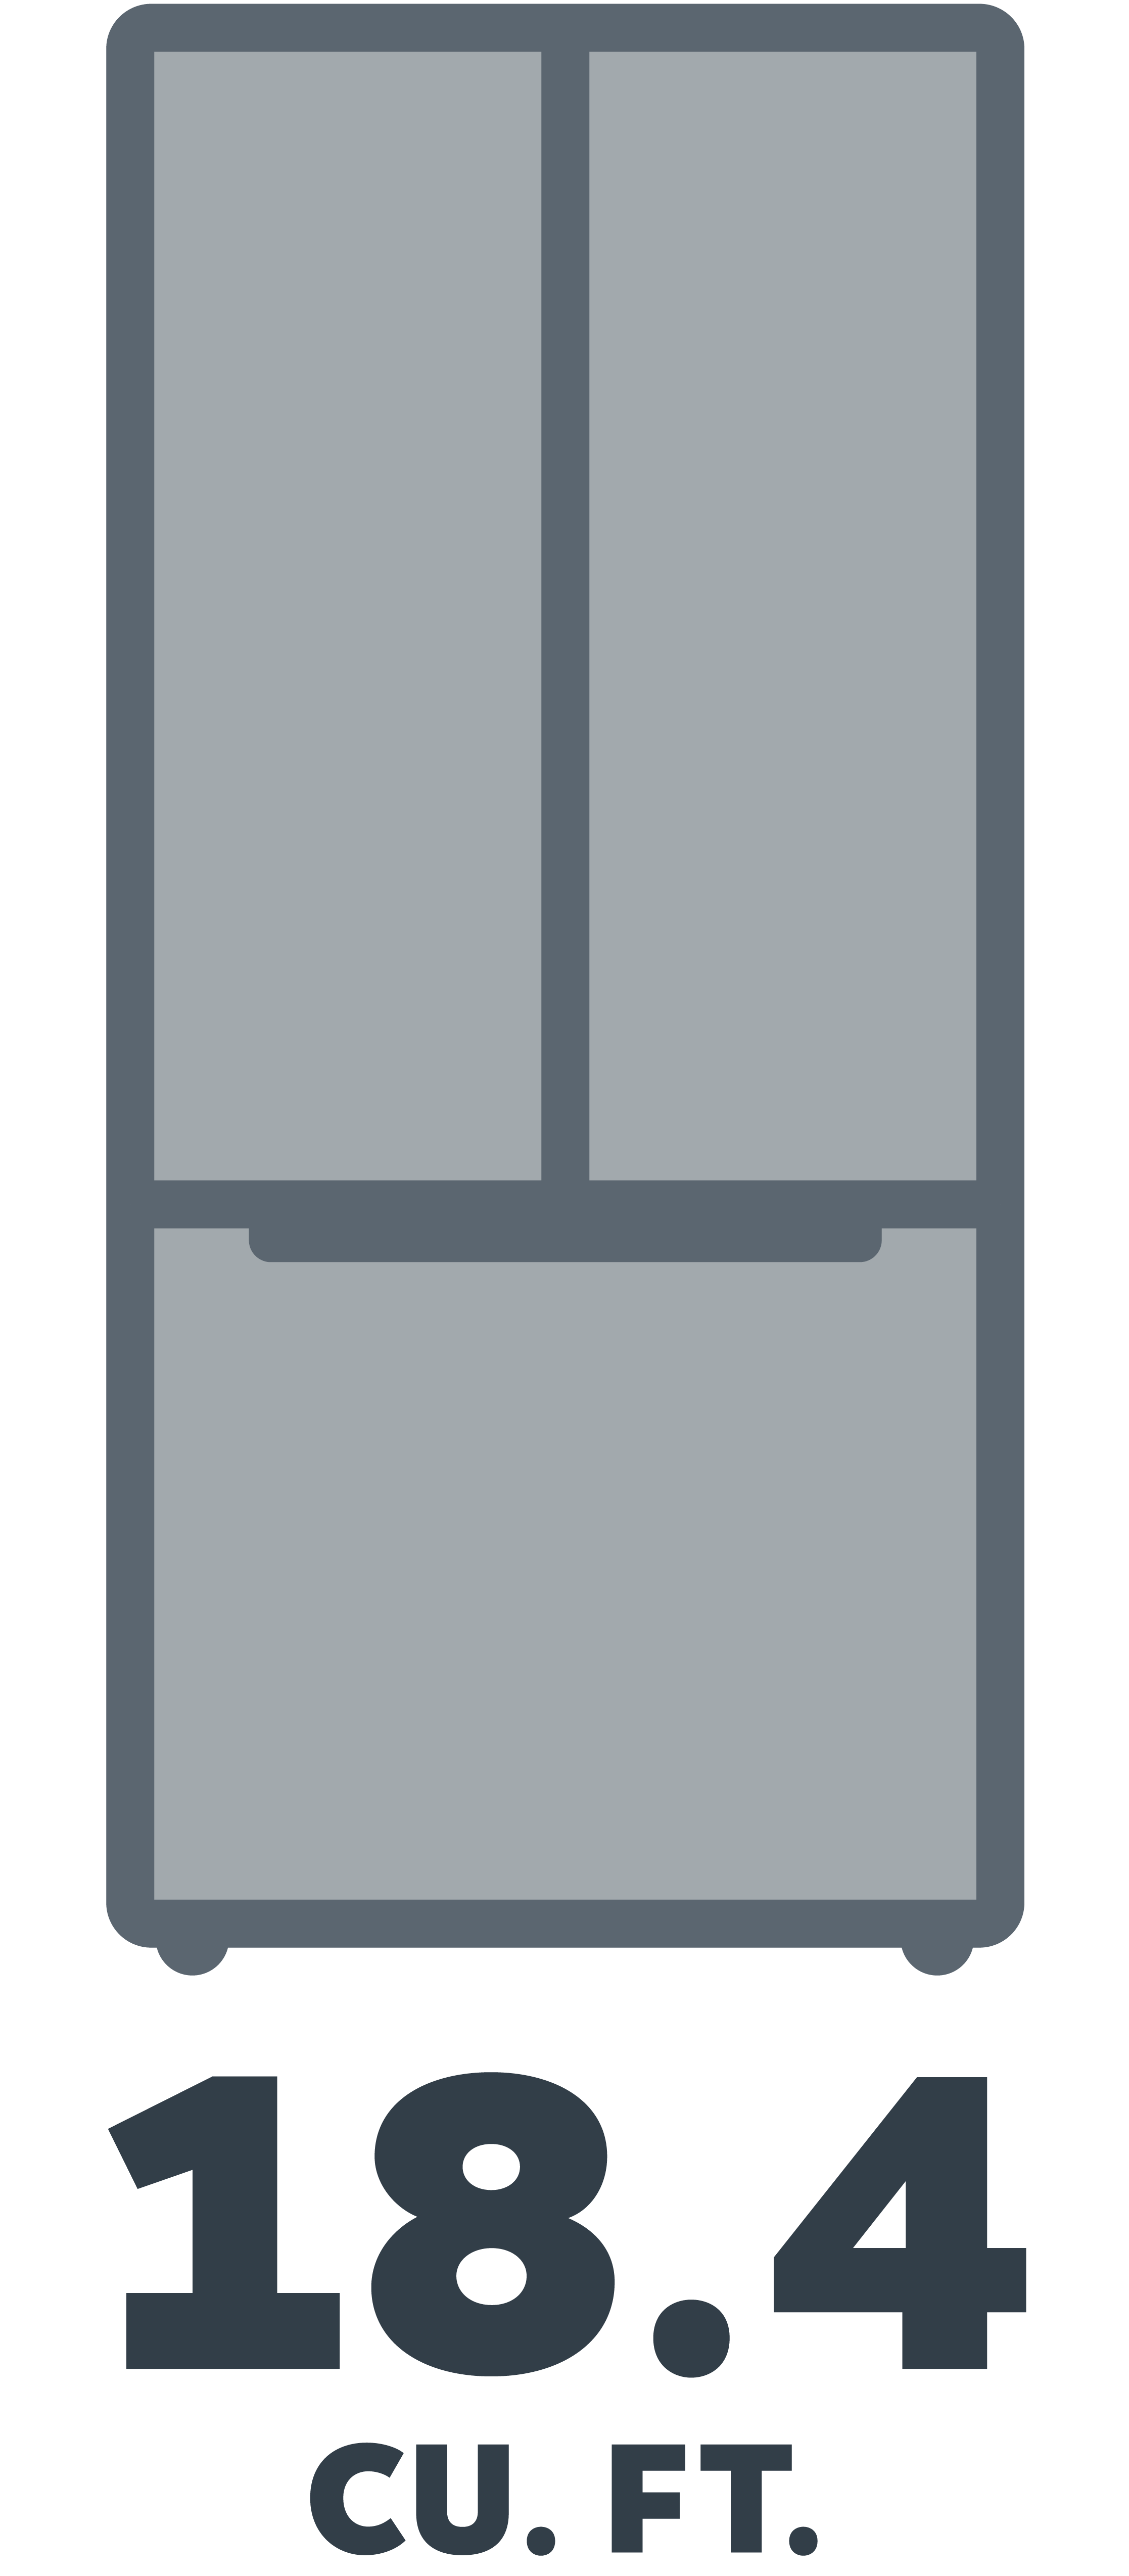 Element 18.4 cu ft French Door Refrigerator